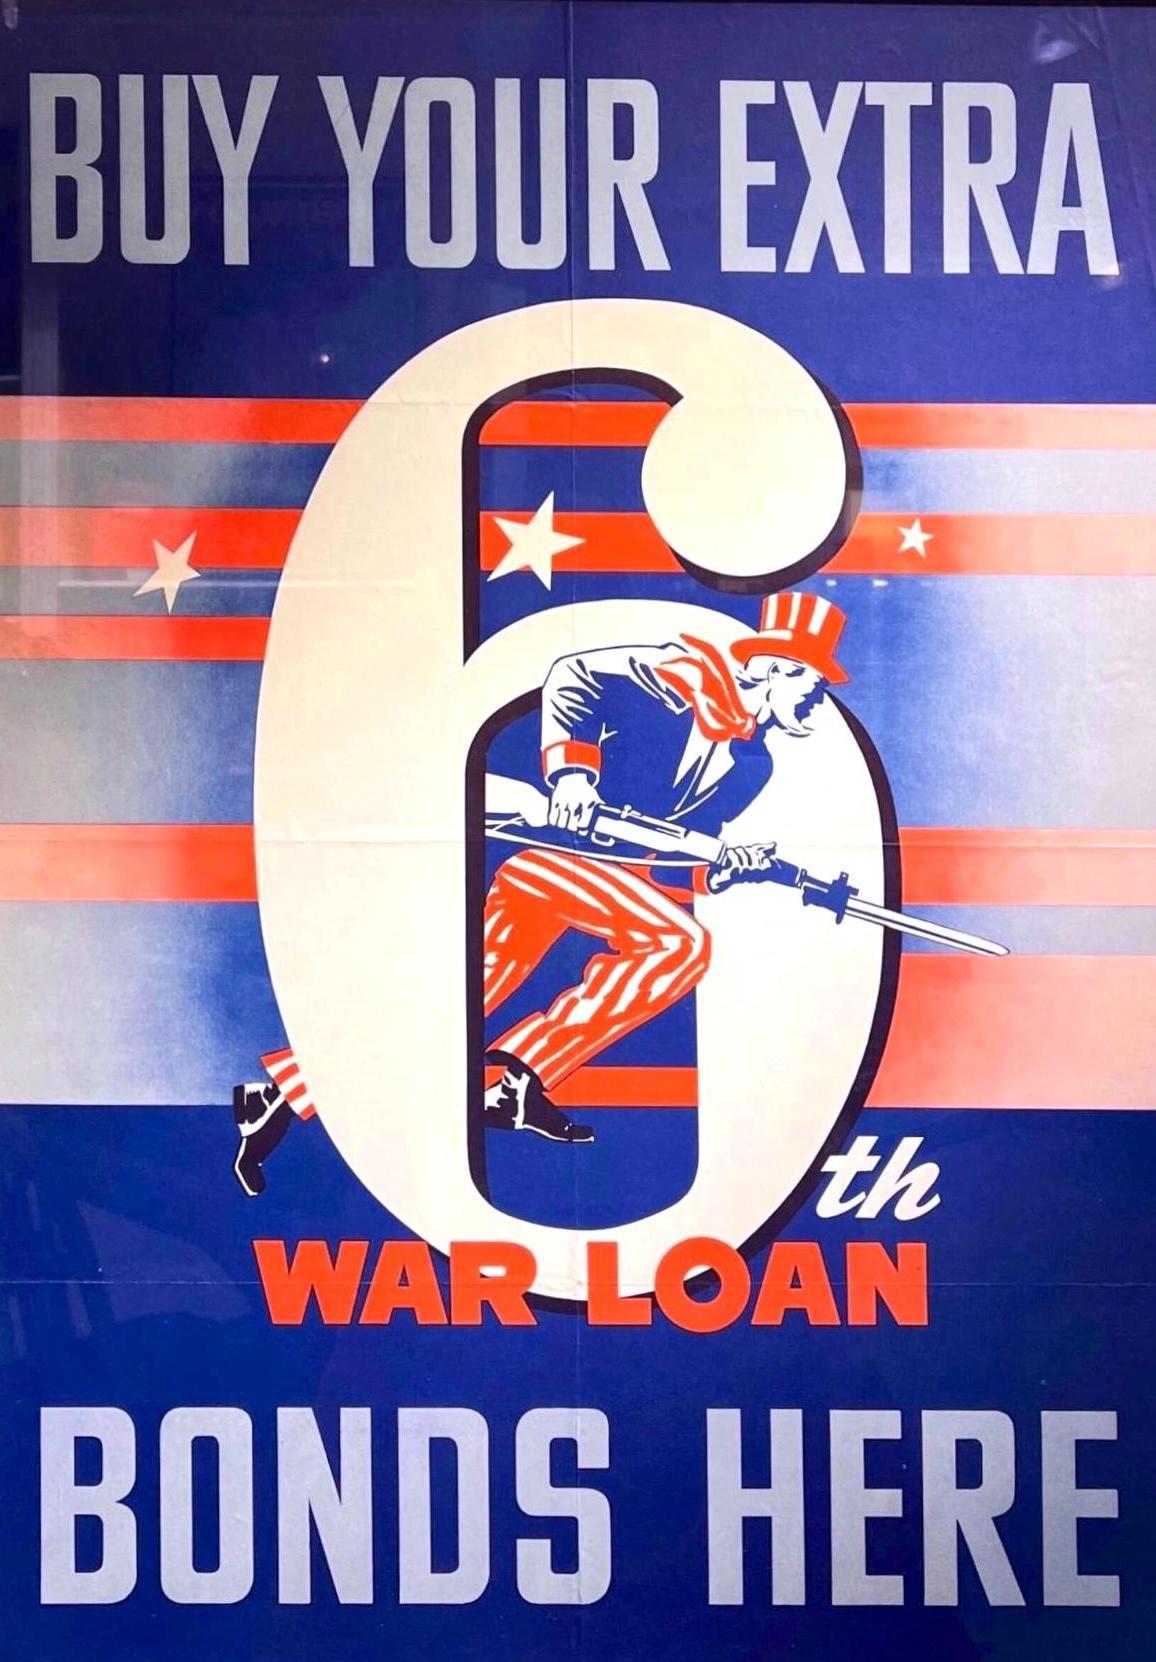 Dies ist ein Originalplakat aus dem Zweiten Weltkrieg, datiert auf 1944. Auf dem Plakat steht in fetten roten, weißen und blauen Buchstaben 